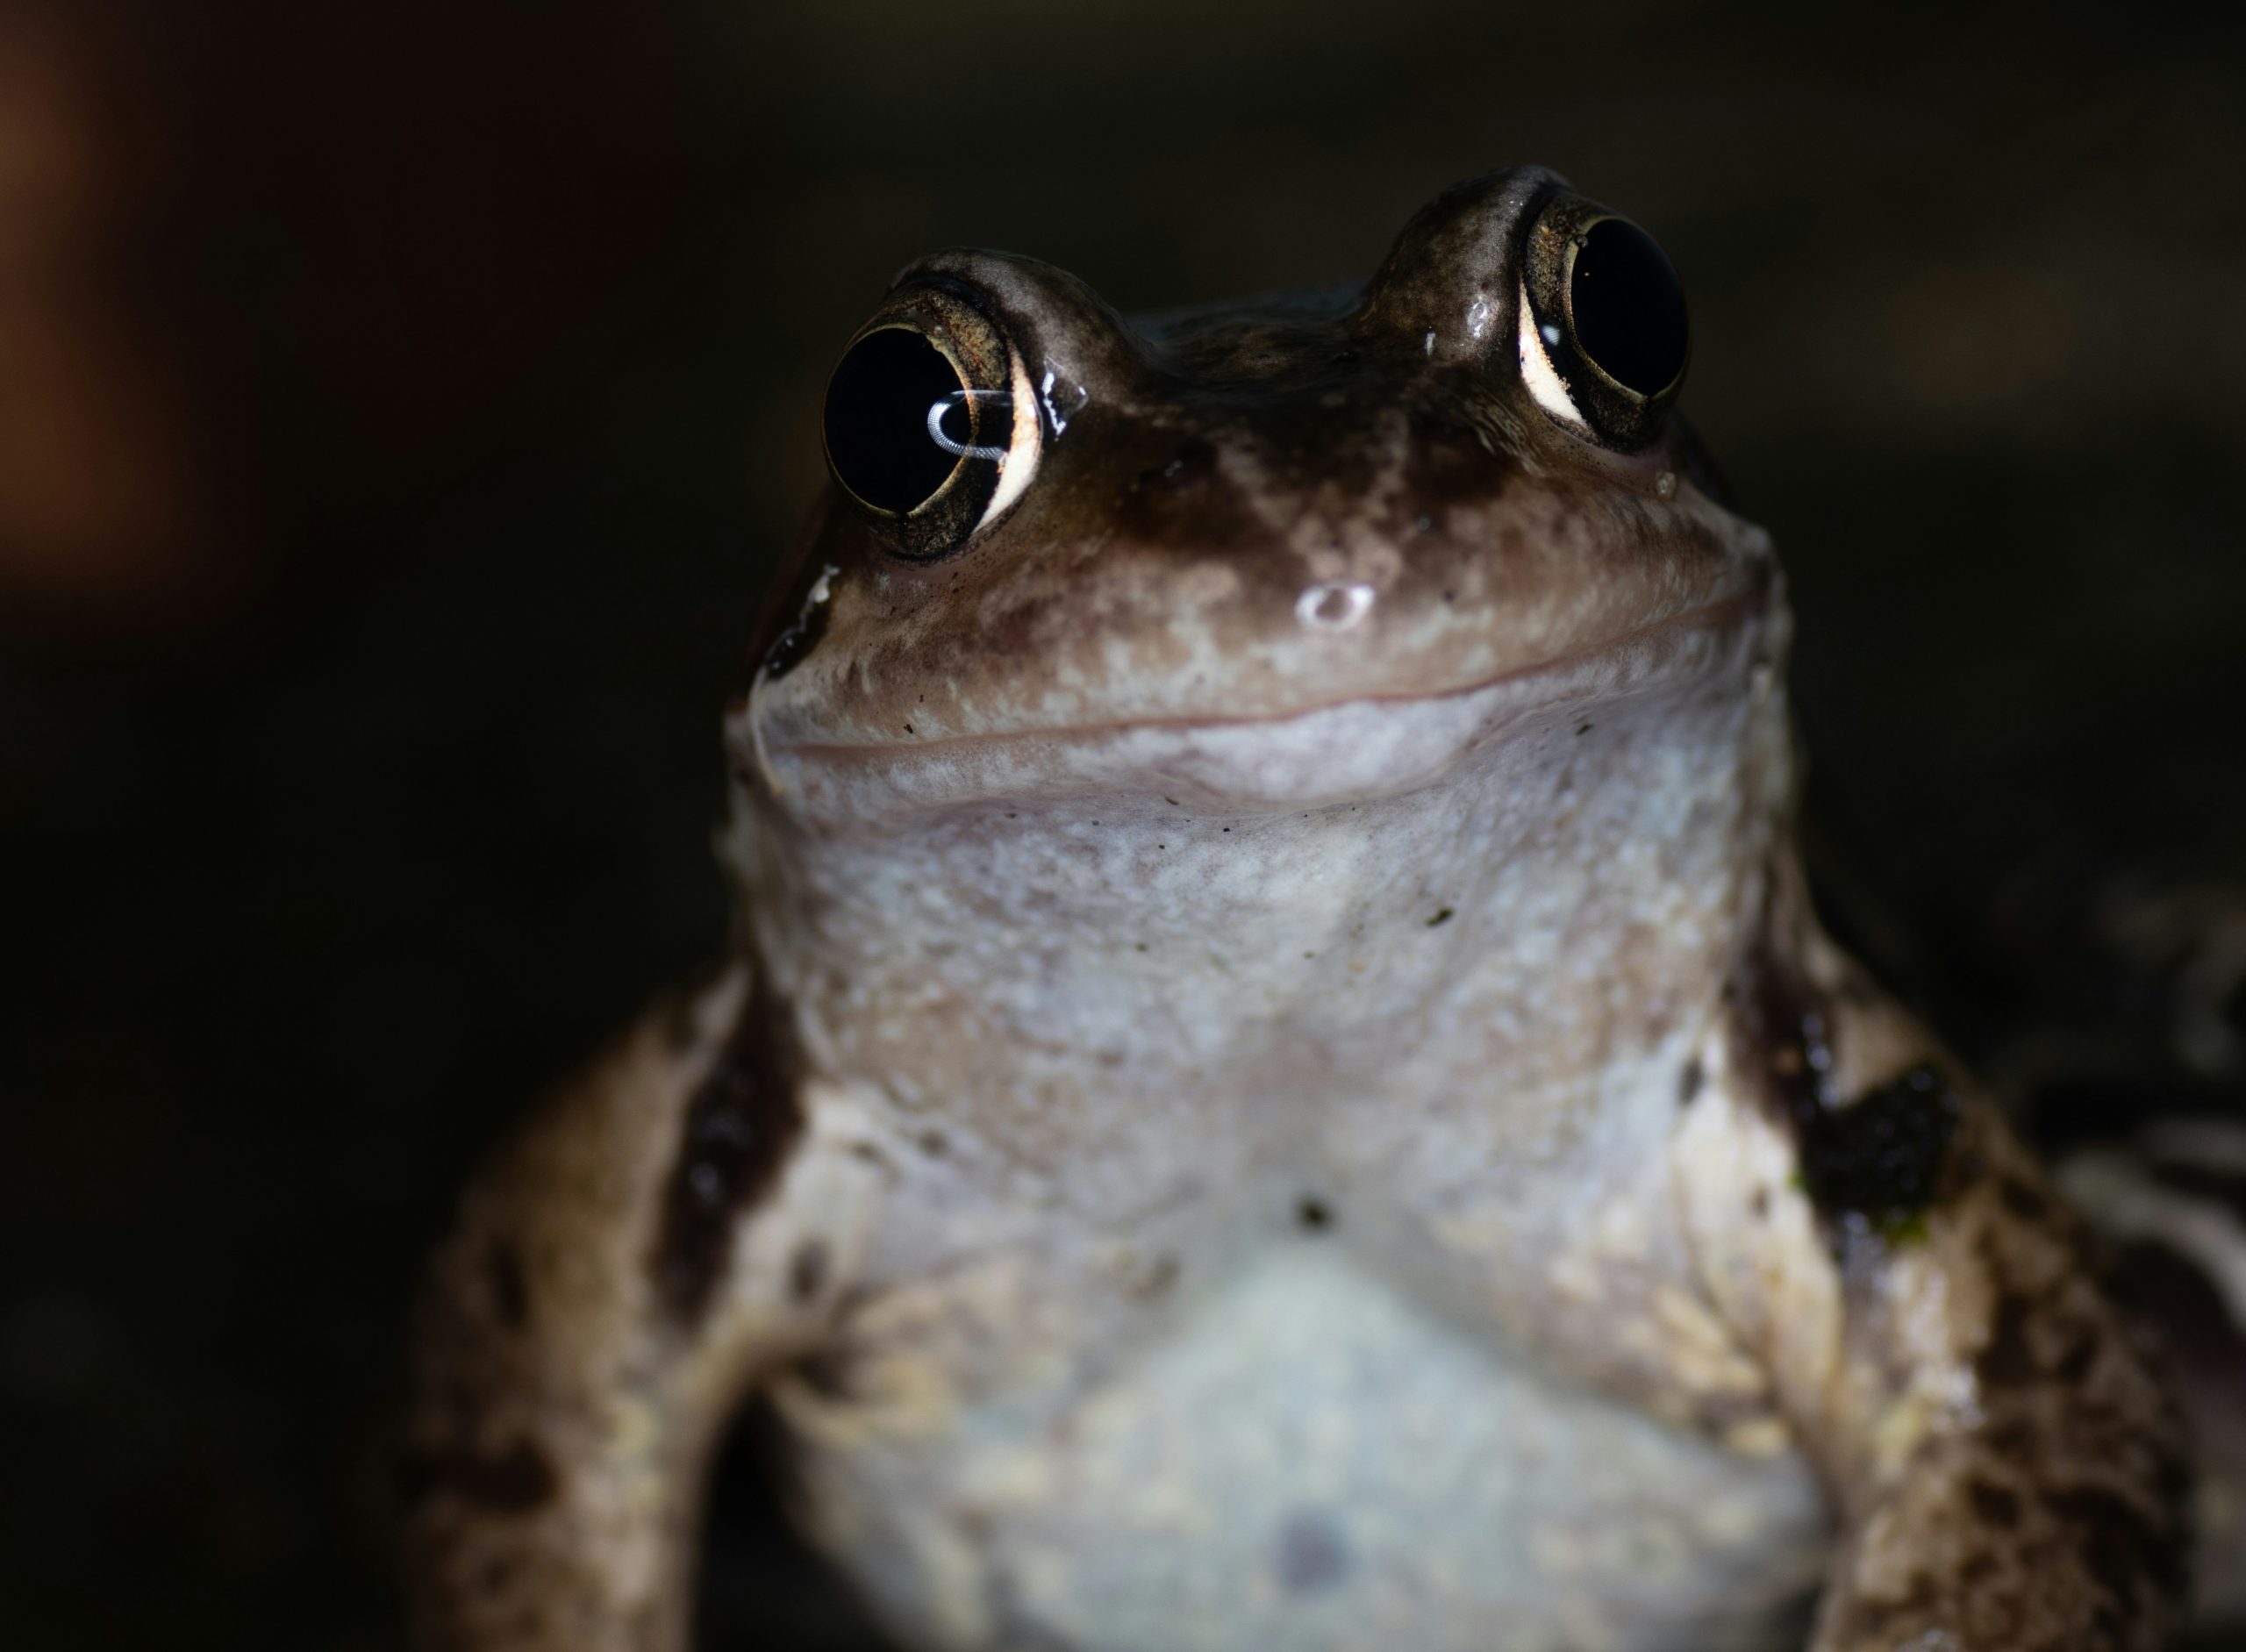 frog at night smiles at camera 